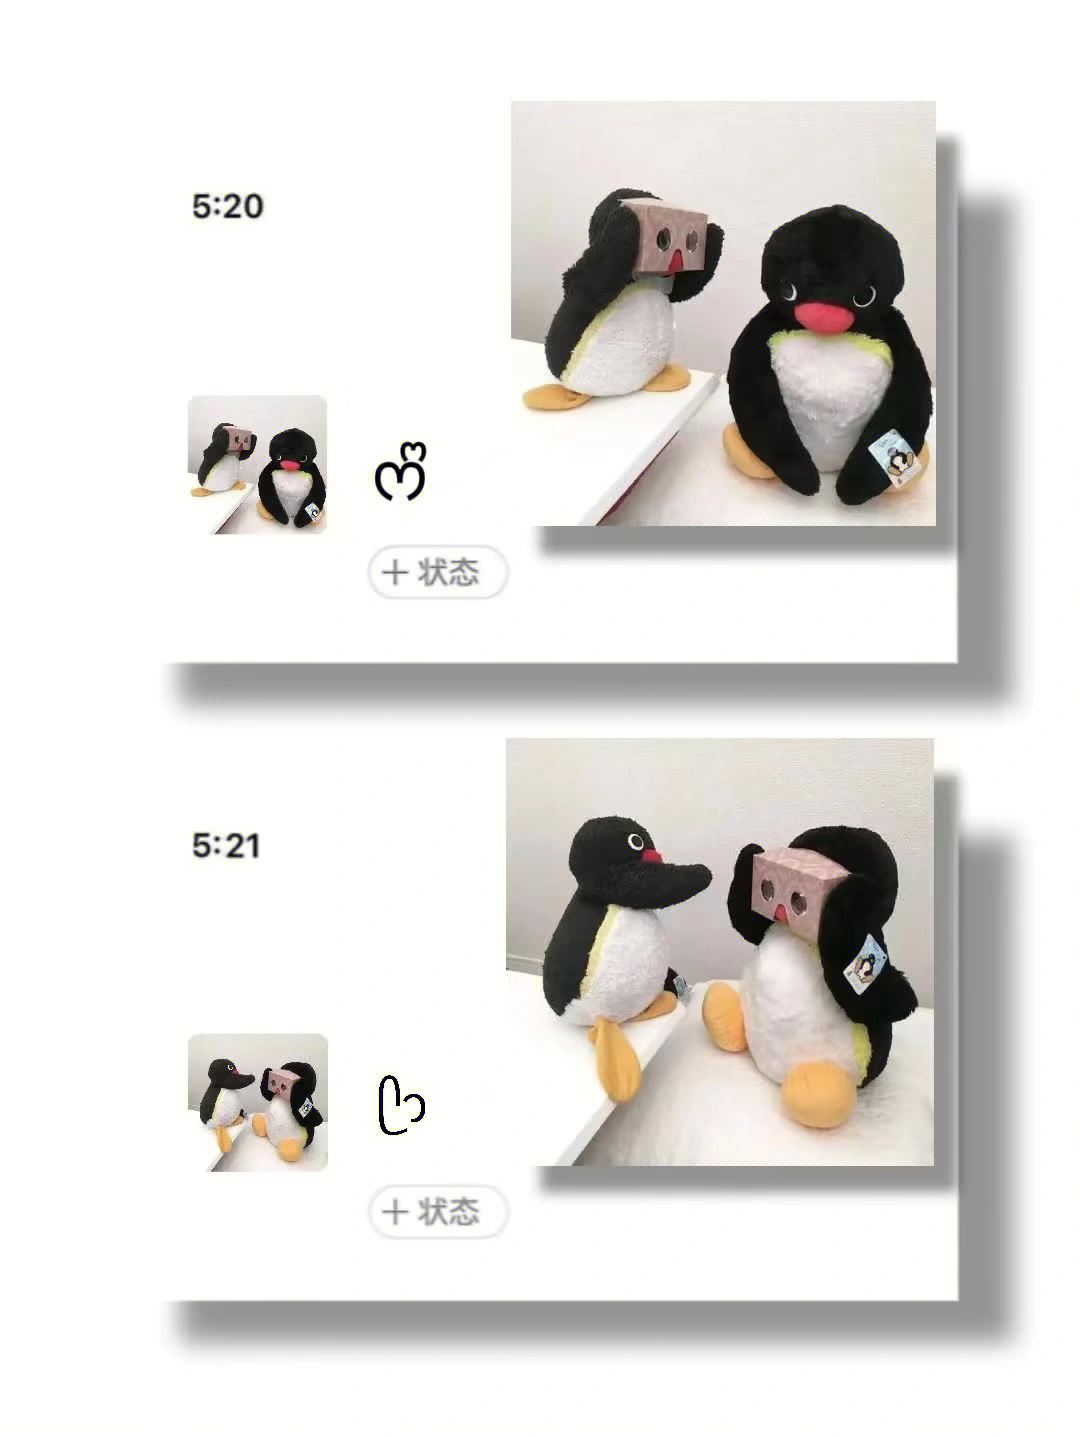 大企鹅打小企鹅情头图片